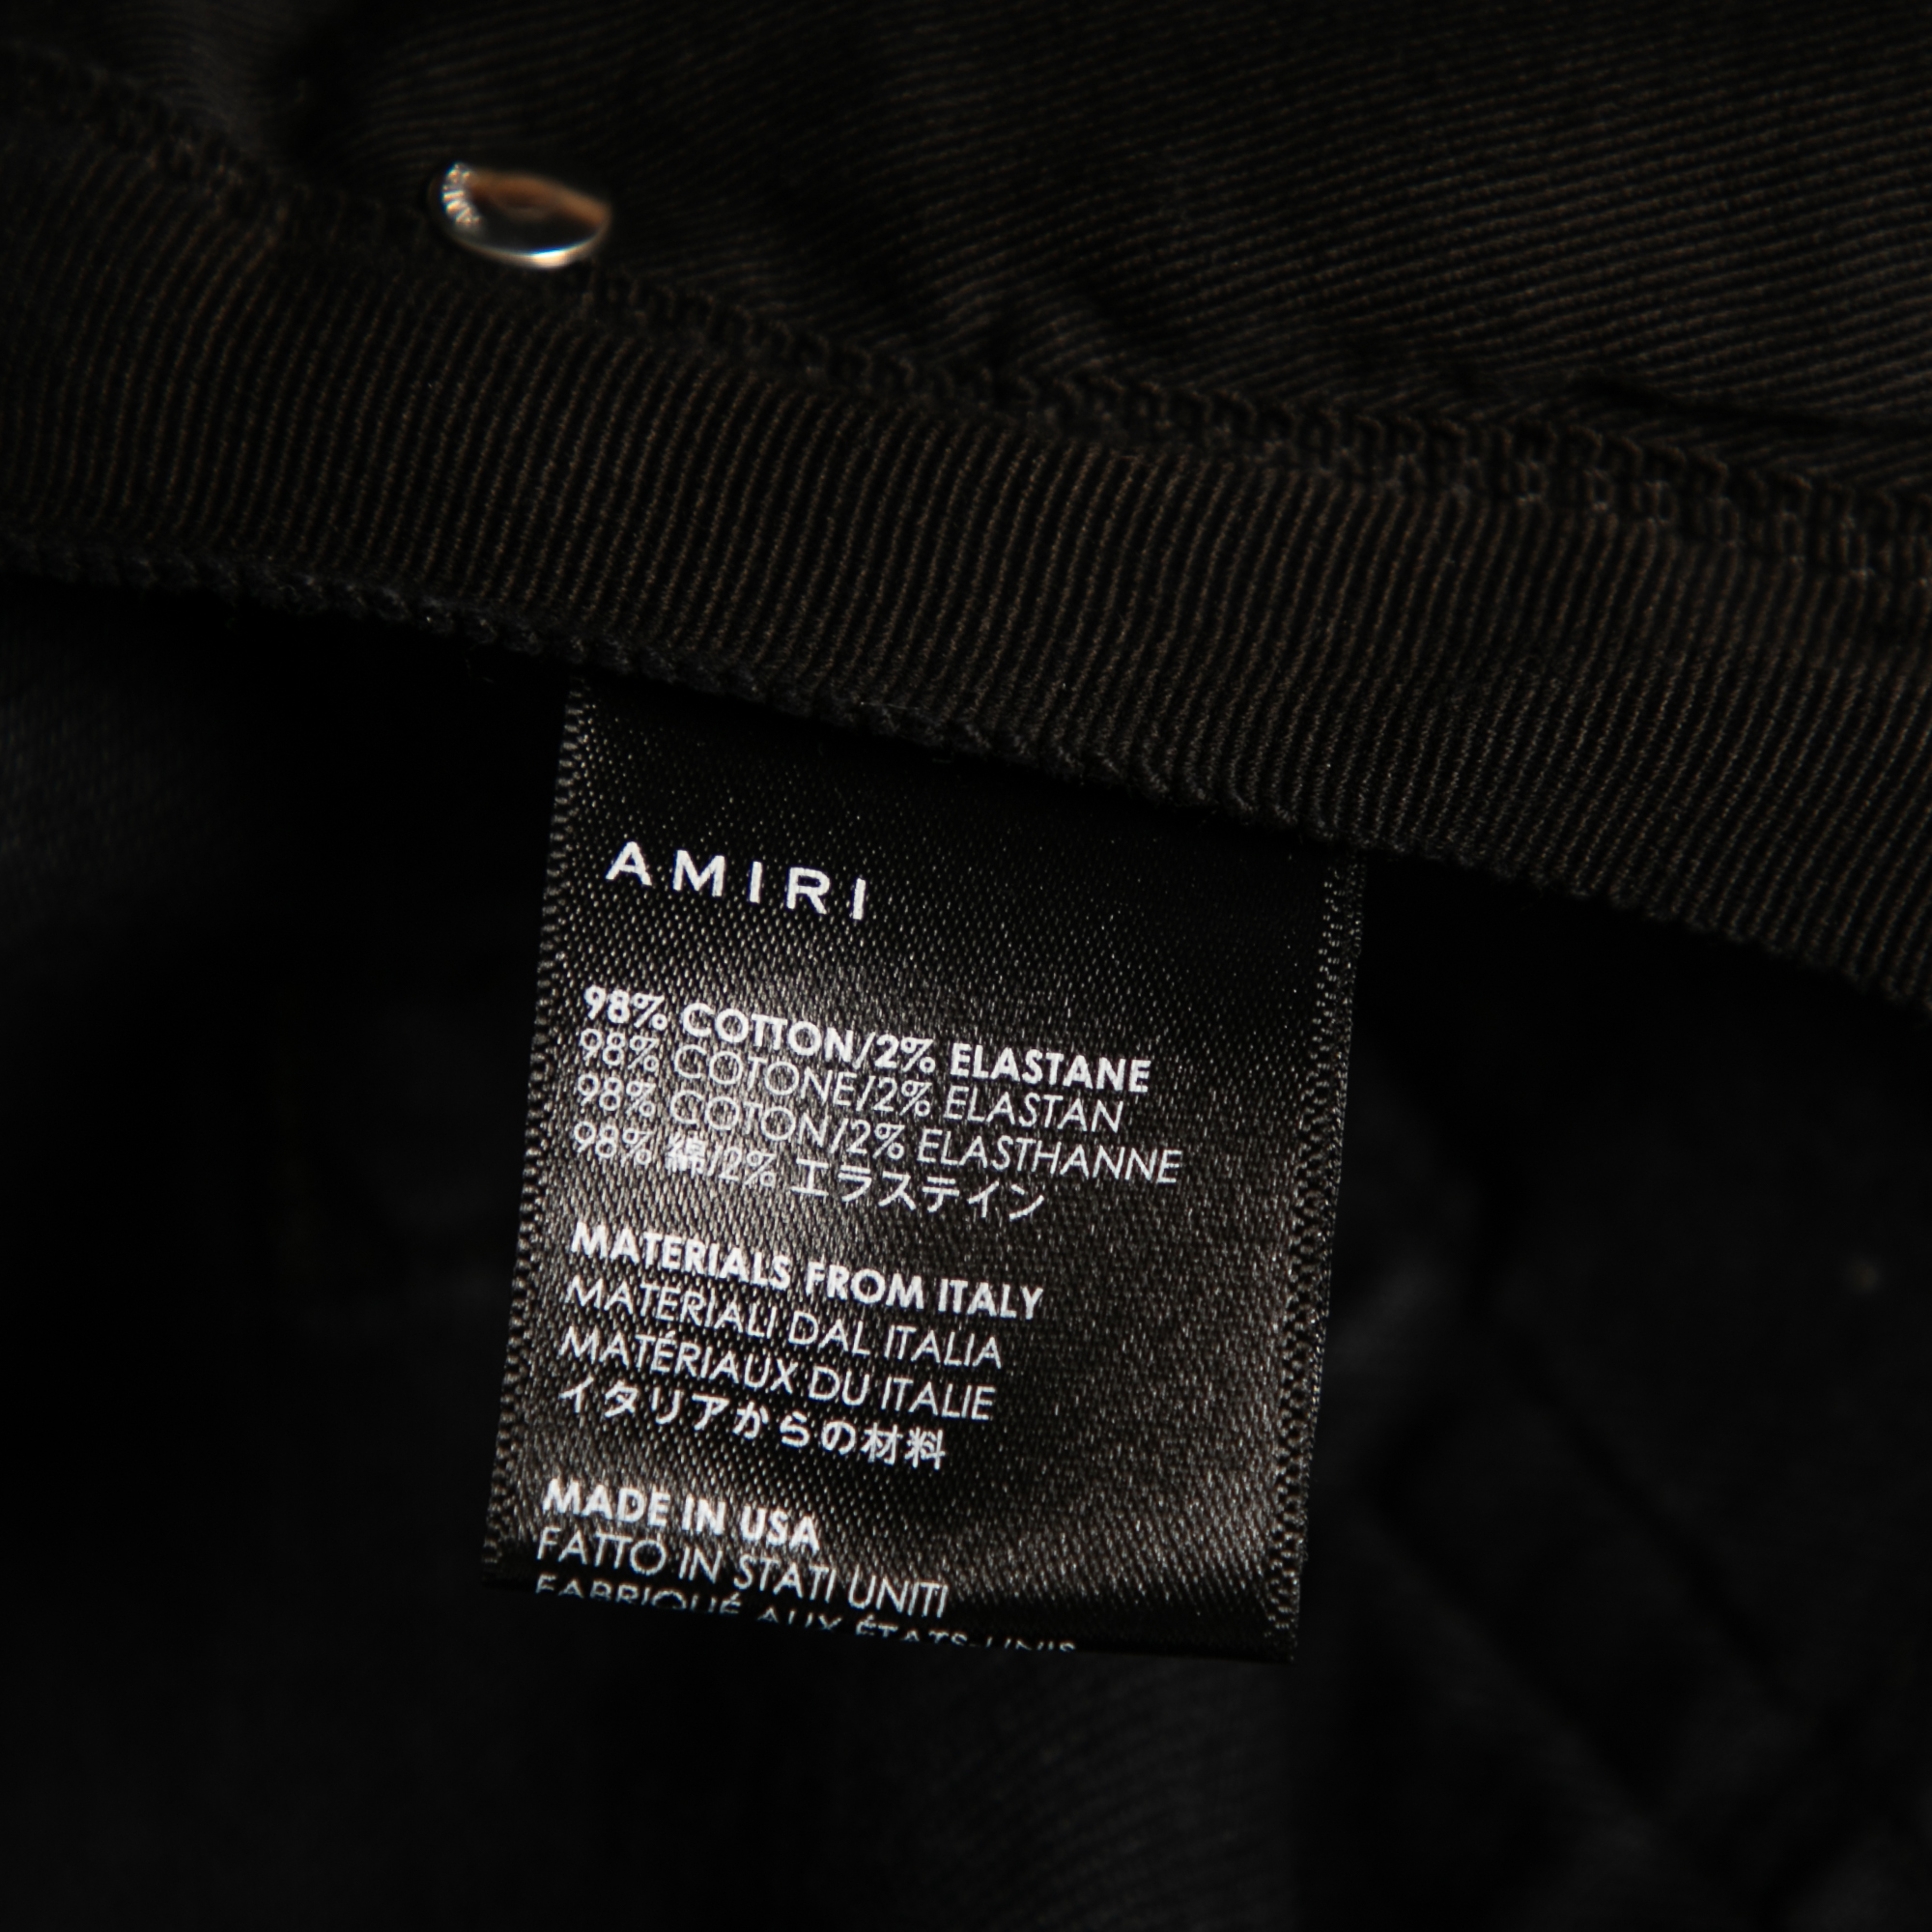 Amiri Black Distressed Denim Slim Fit Jeans M